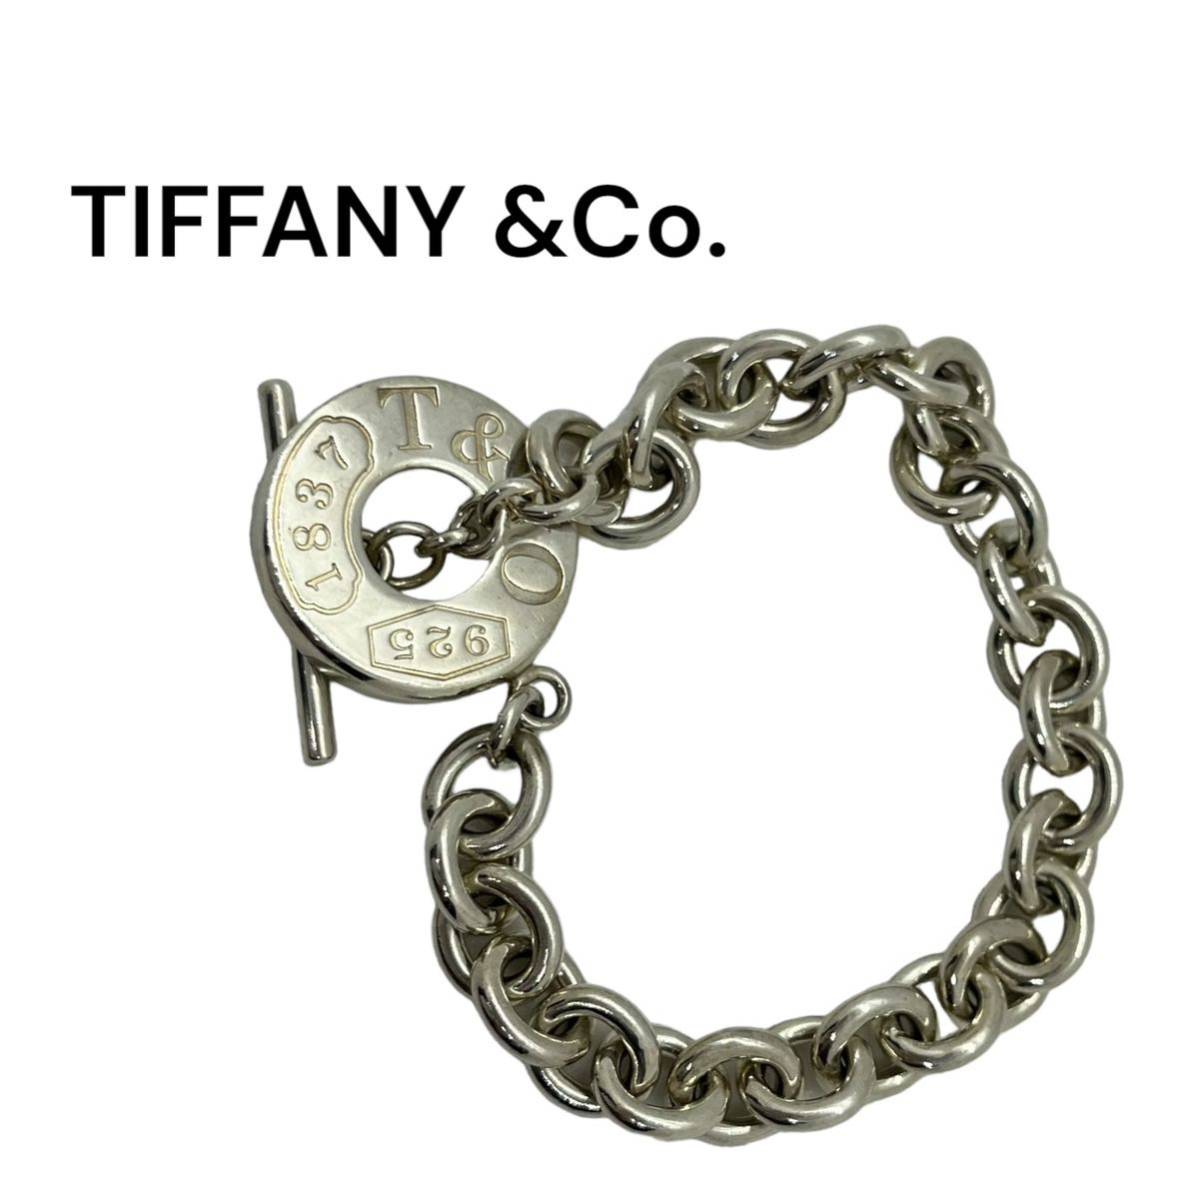 TIFFANY&CCo ブレスレット トグル シルバー925 レディース アクセサリー チェーン